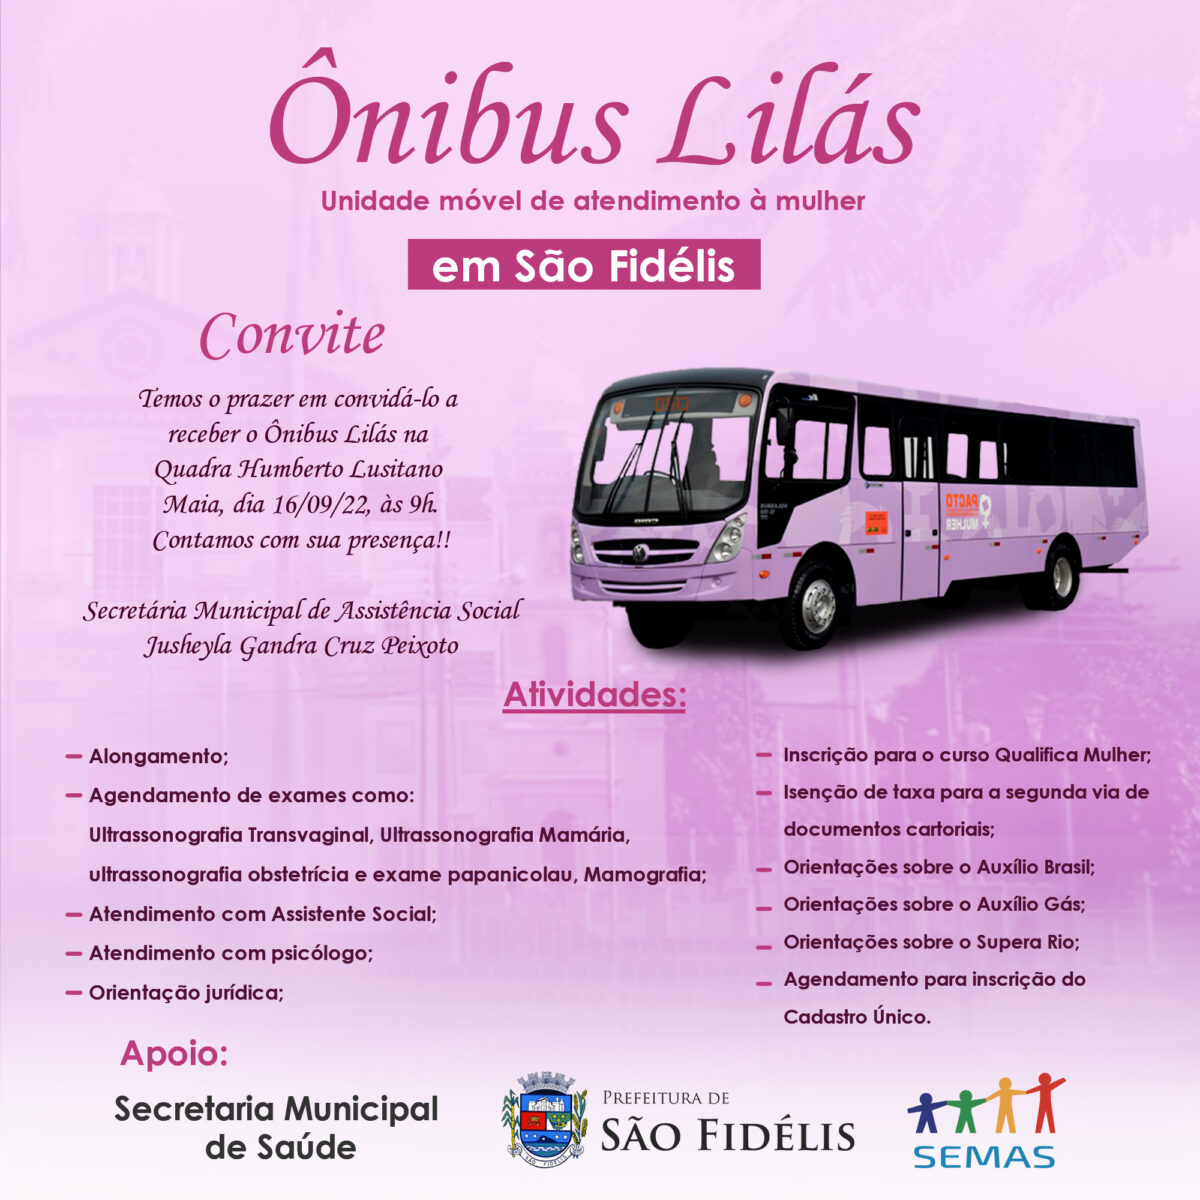 O município de São Fidélis vai receber o “Ônibus Lilás” Unidade móvel de enfrentamento à violência contra à mulher.